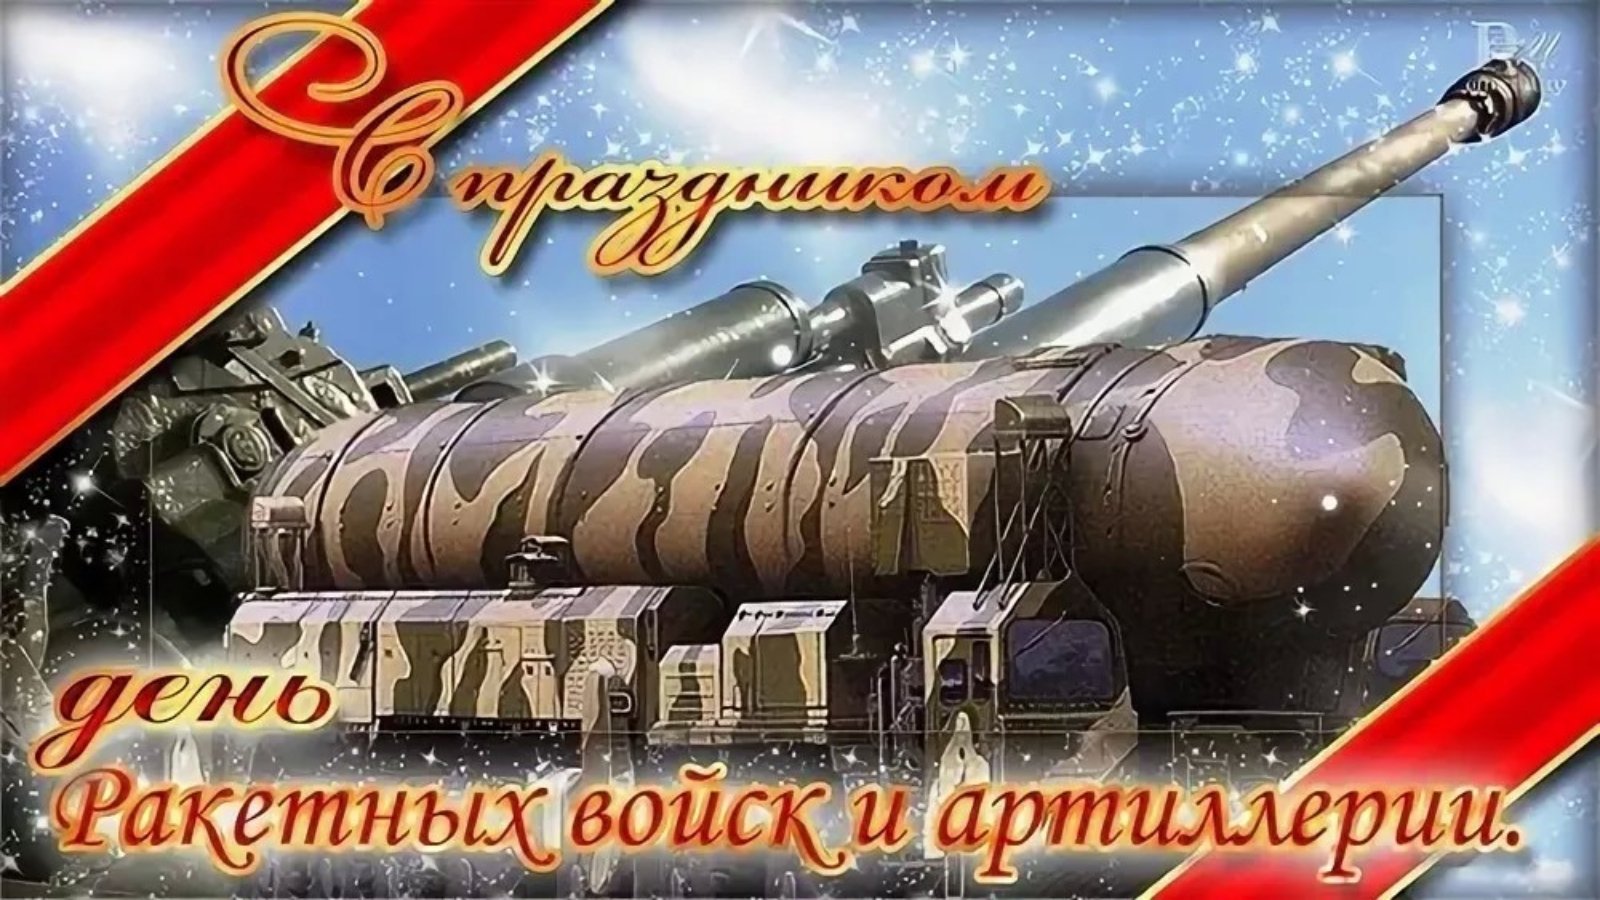 19 ноября было установлено днём артиллерии Указом Президиума Верховного Совета РФ.